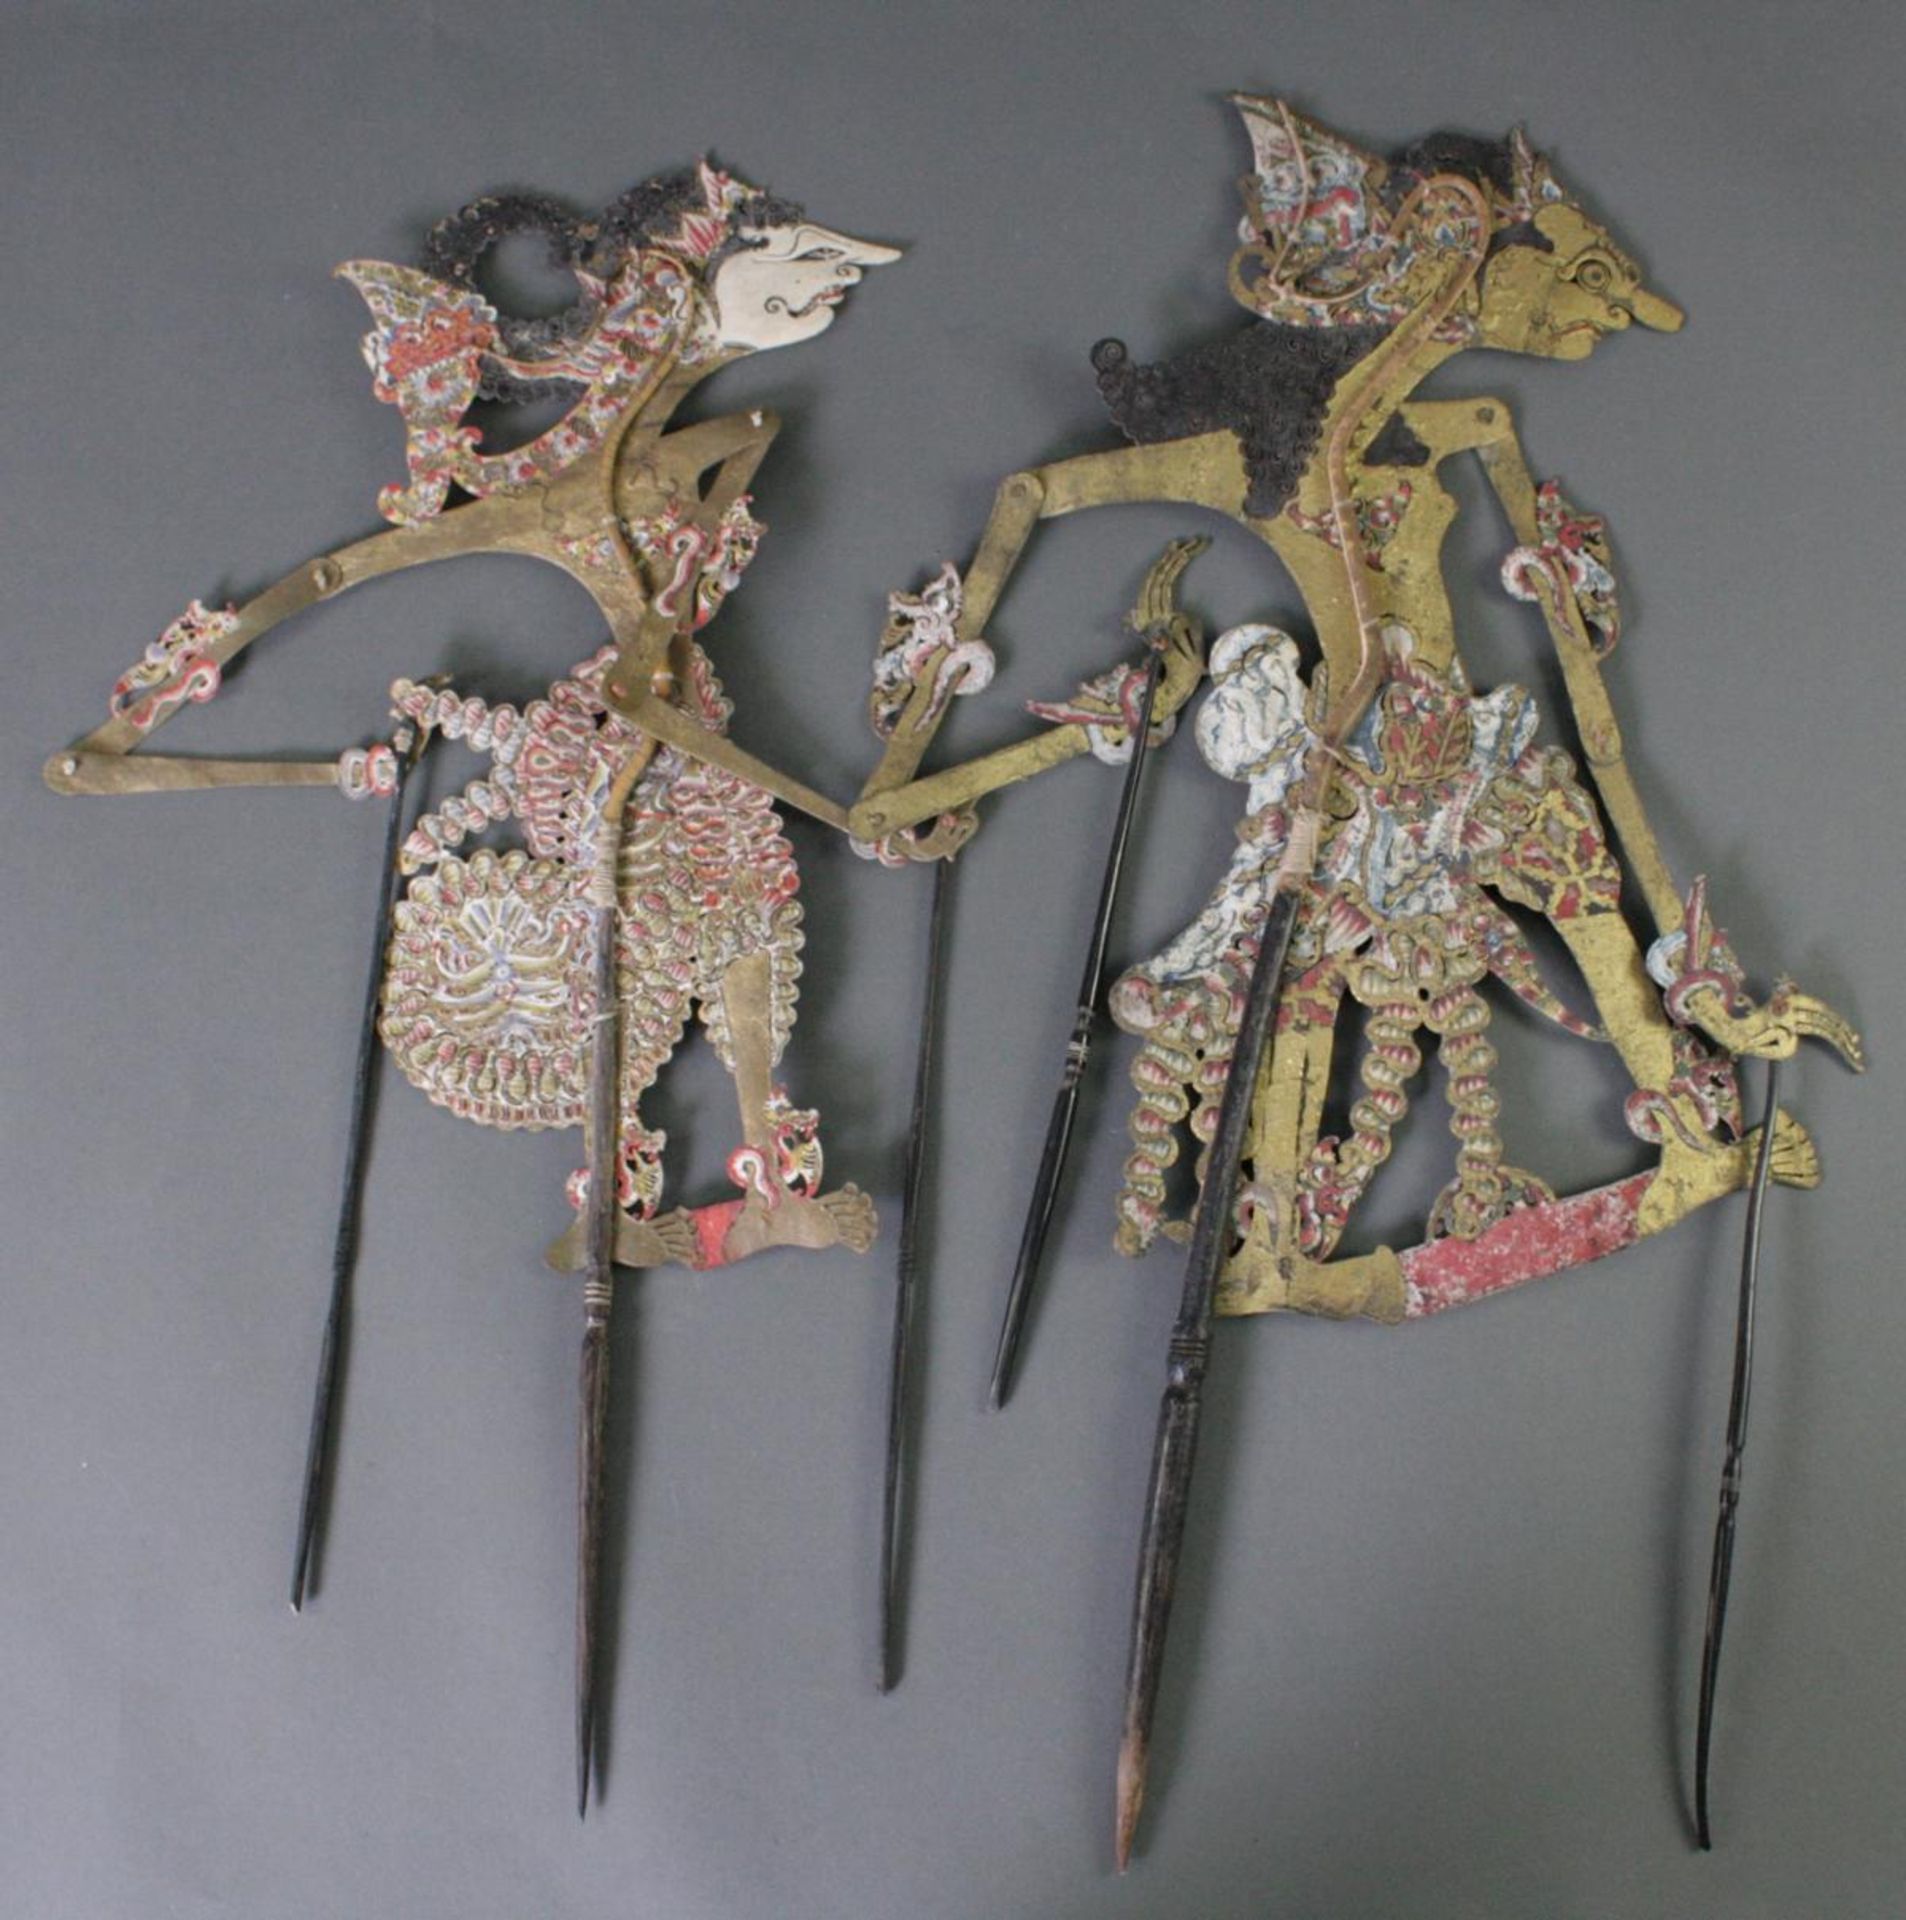 2 indonesische Schattenspiel-Puppen, Wayang-Kulit